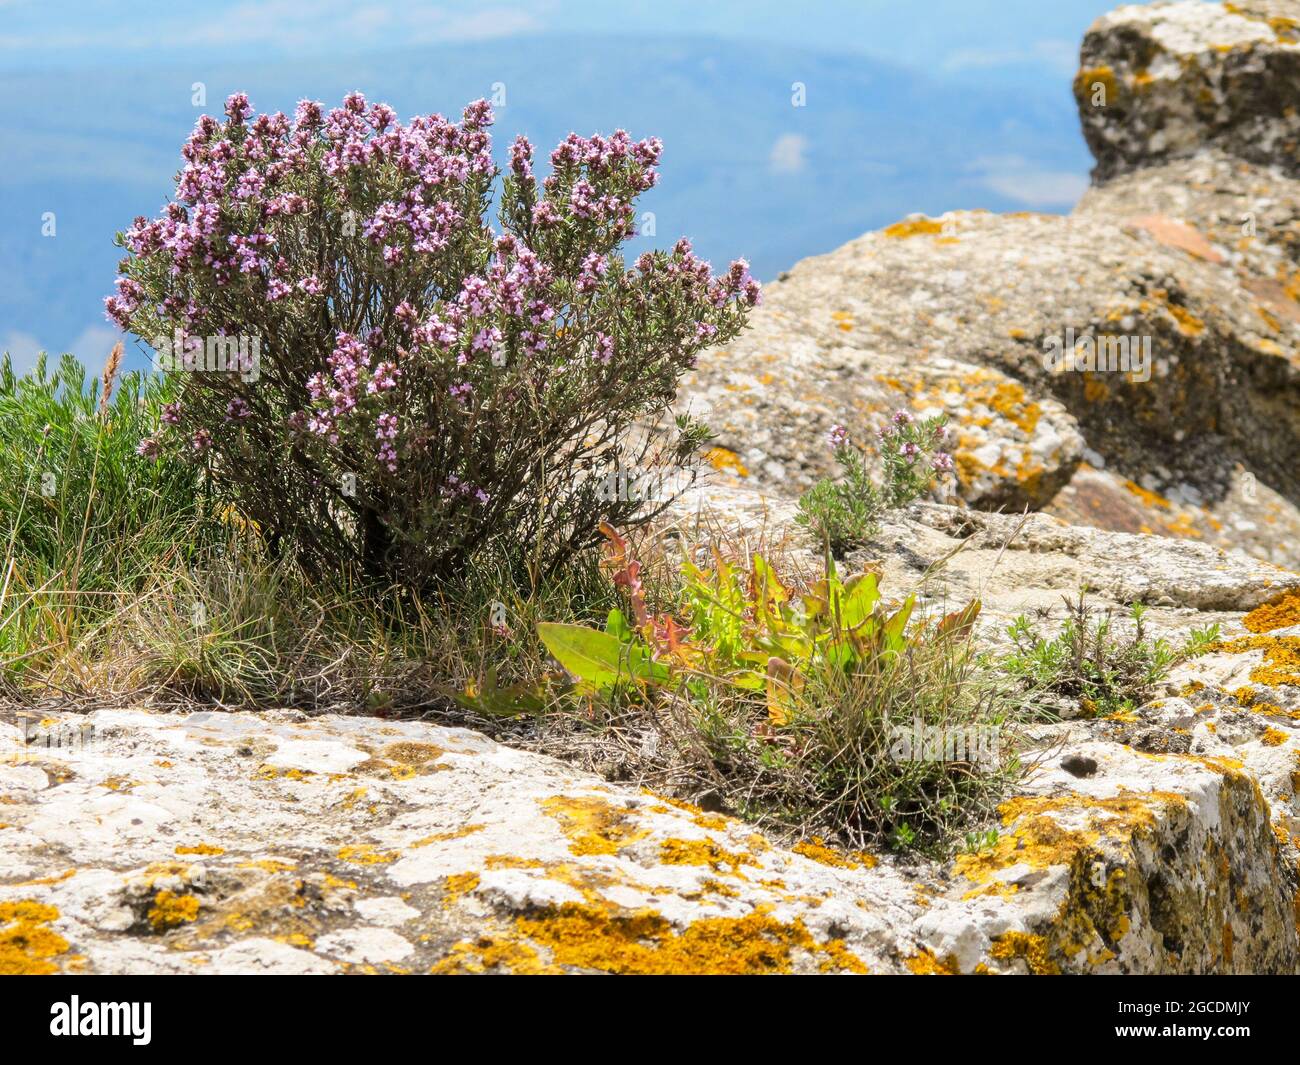 Blühender Rosmarin in den Bergen der Region Pyrénées-Orientales - Rosmarin in full bloom in the mountains of the region Pyrénées-Orientales. Stock Photo